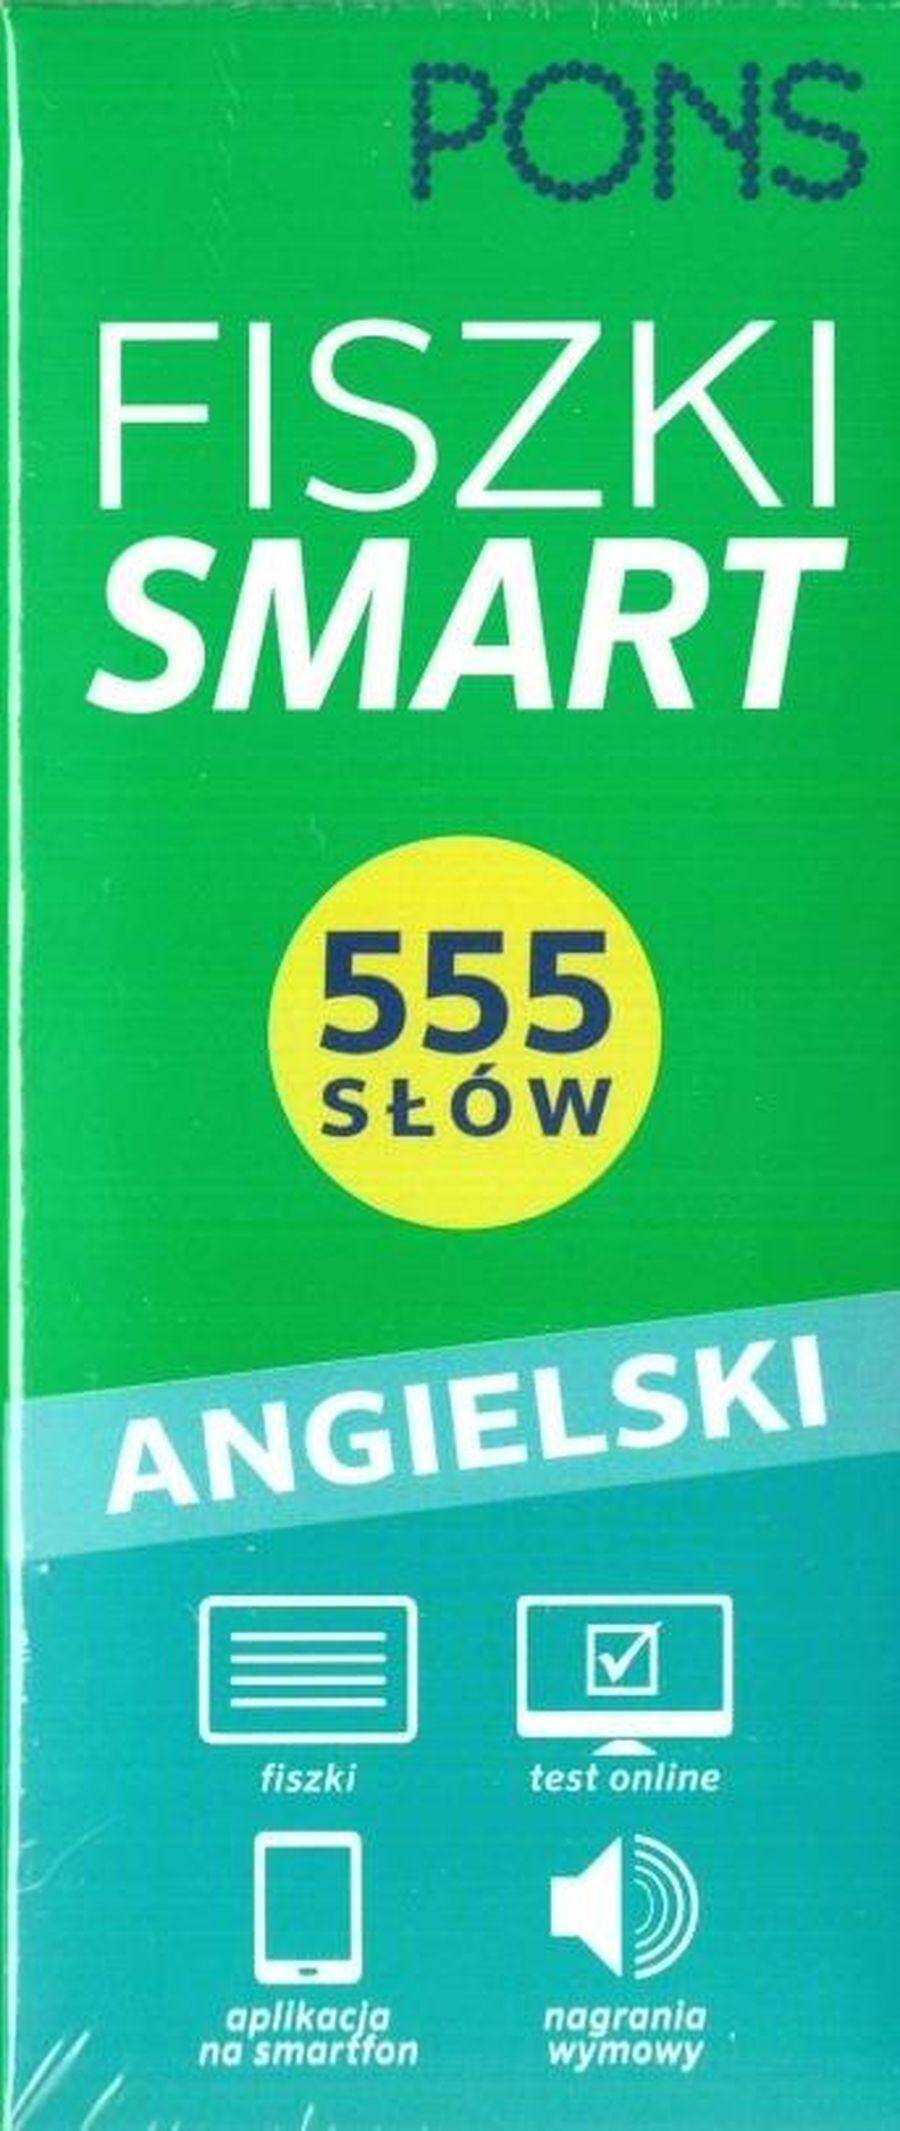 Fiszki SMART 555 Angielski W.2 PONS